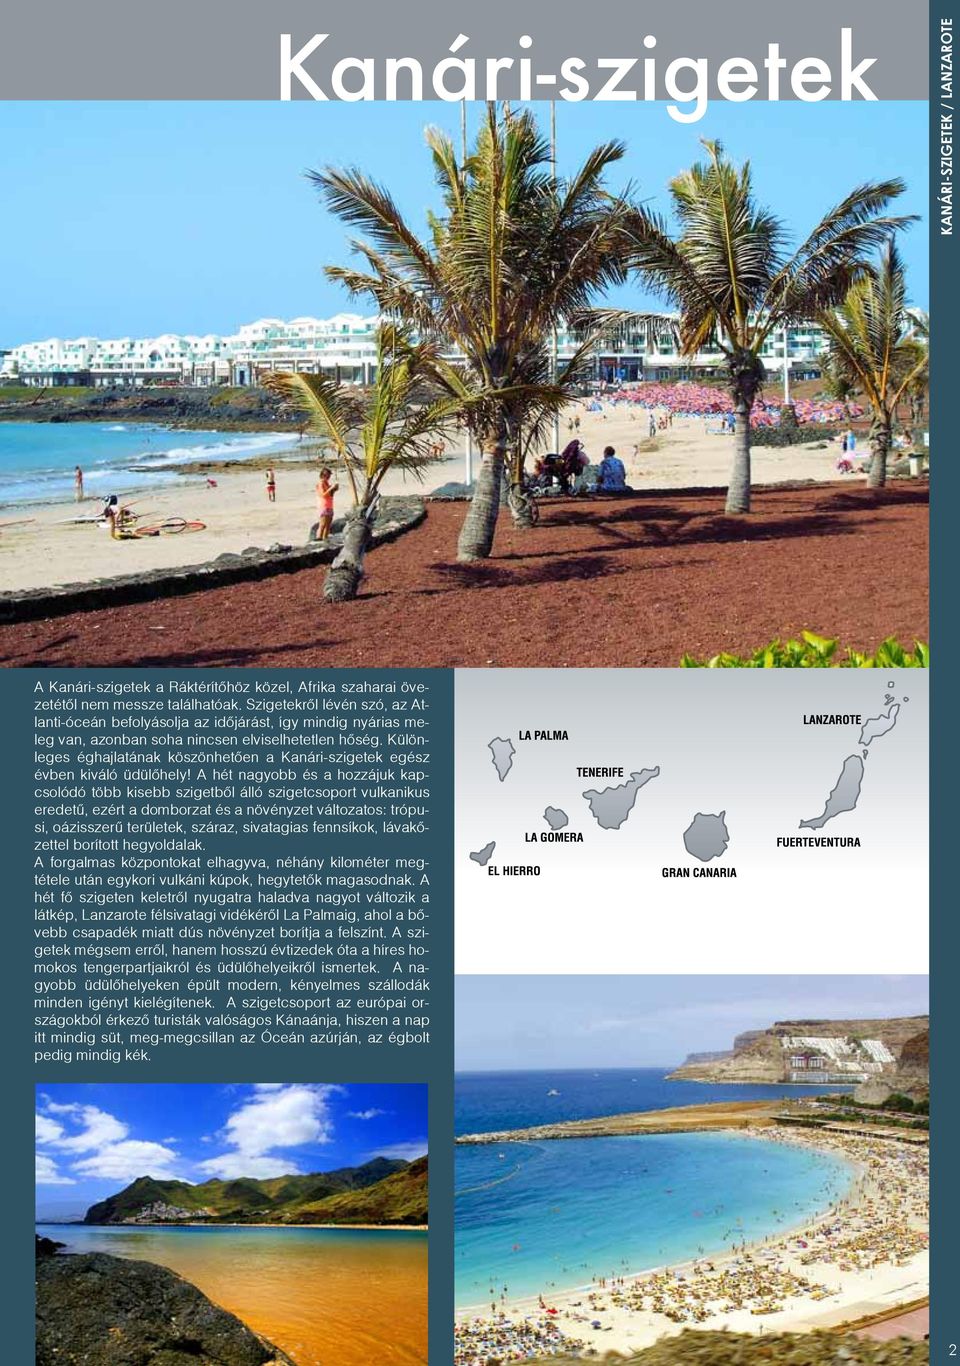 Különleges éghajlatának köszönhetően a Kanári-szigetek egész évben kiváló üdülőhely!